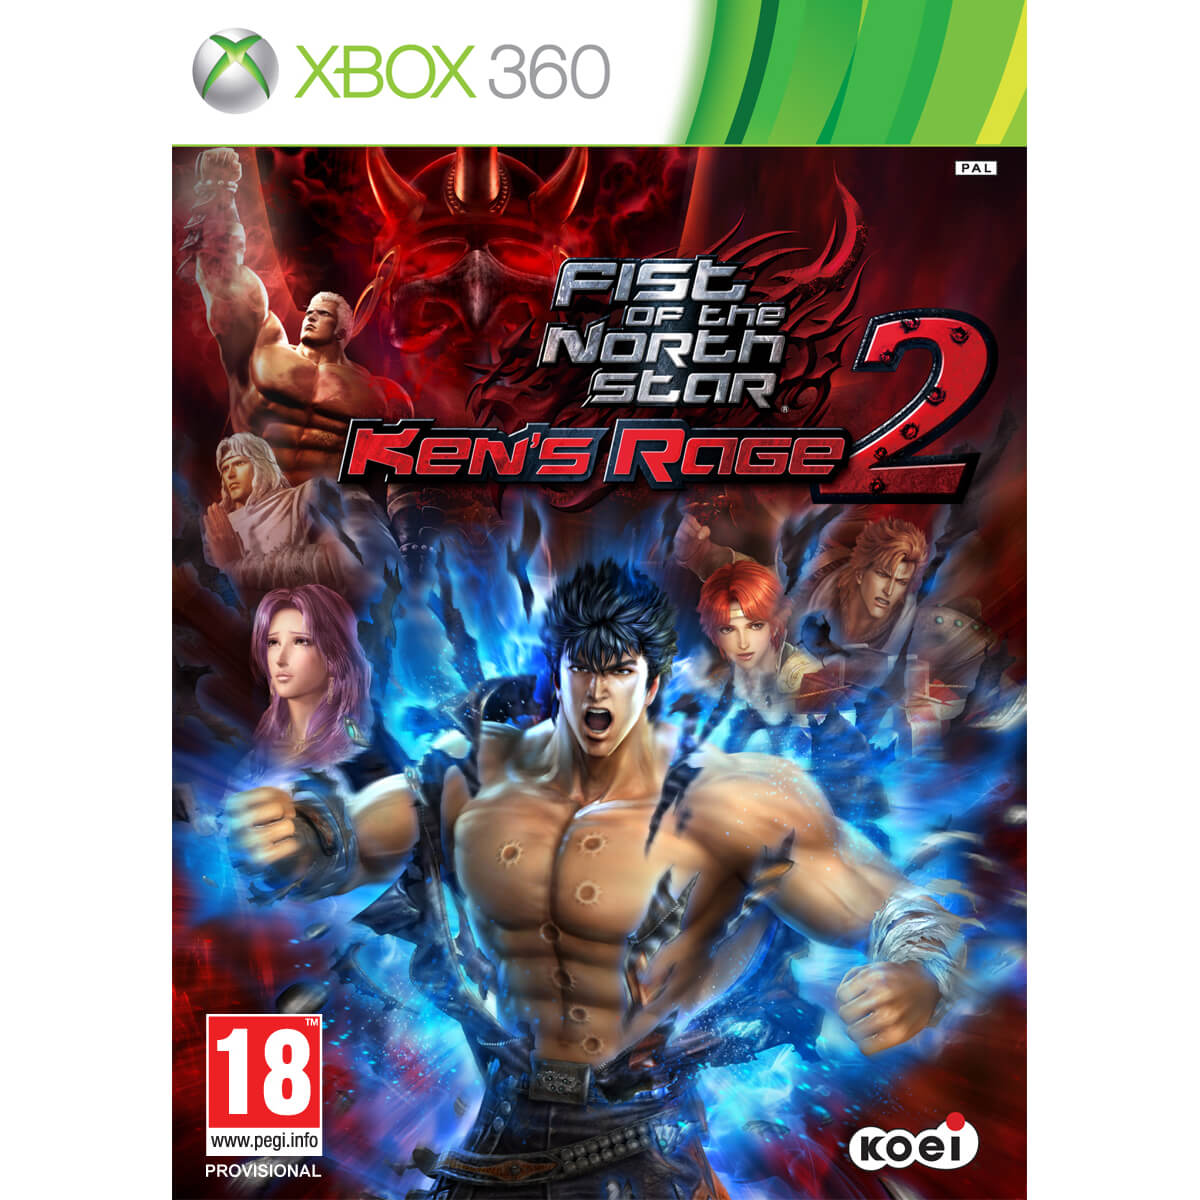  Joc Xbox 360 Fist Of The North Star Kens Rage 2 